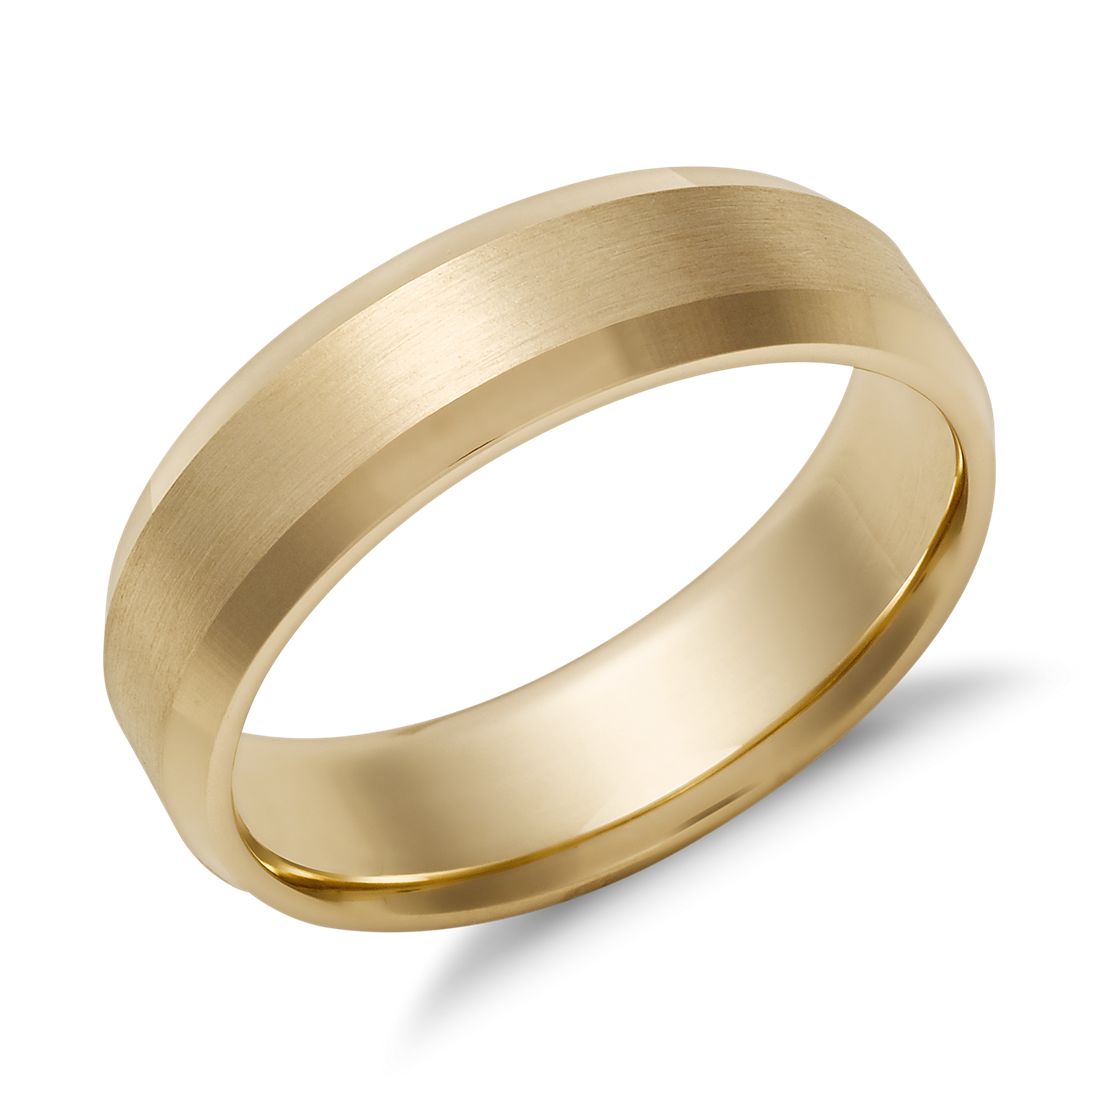 Beveled Edge Matte Wedding Ring in 14k Yellow Gold (6 mm)